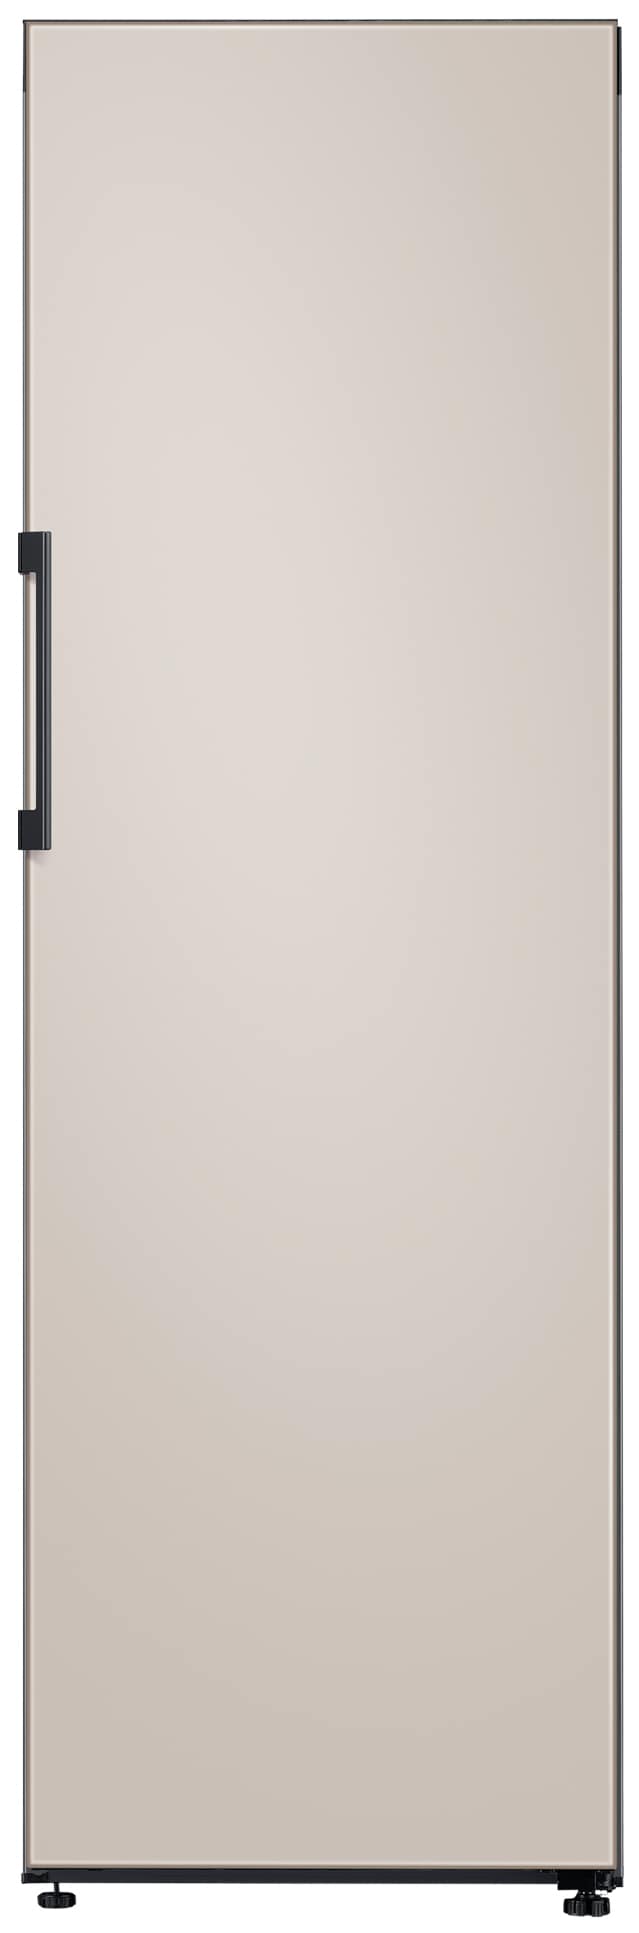 Samsung køleskab RR39C76C739/EF